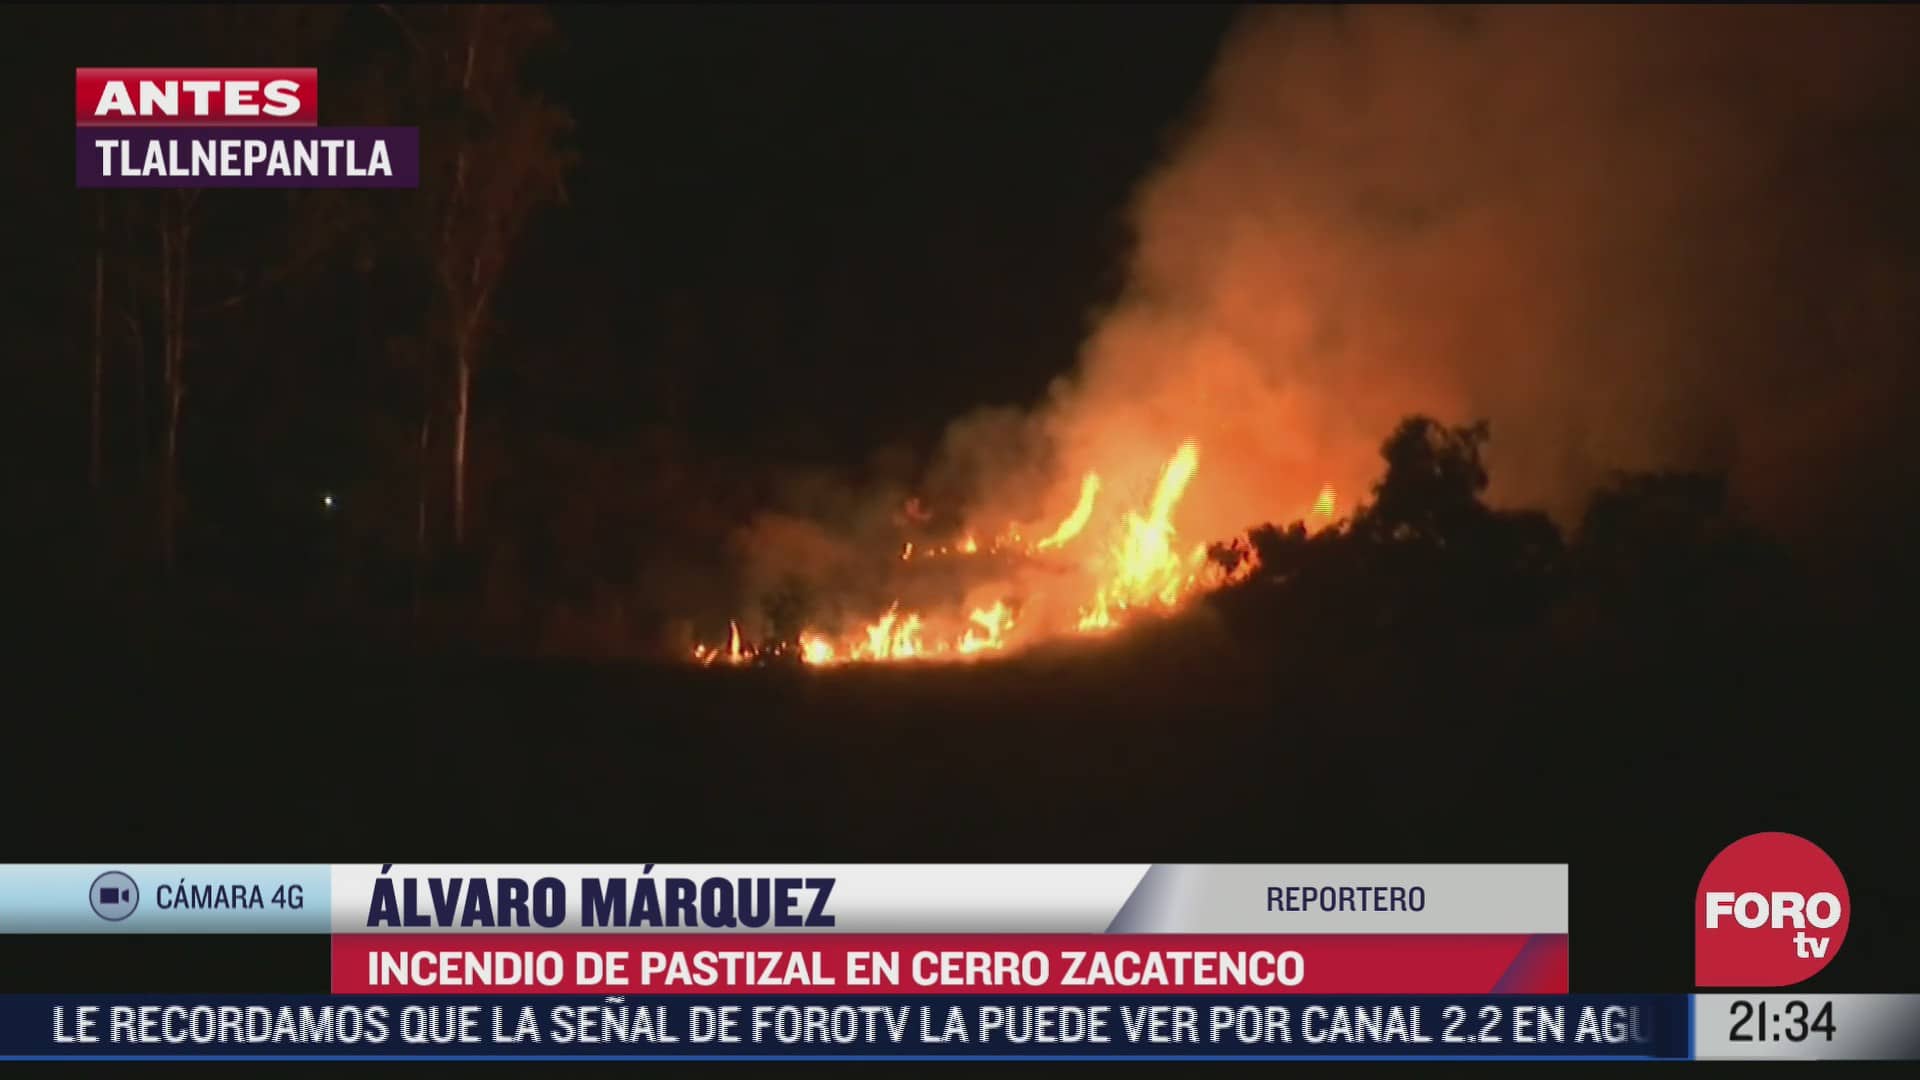 incendio de pastizal en cerro zacatenco en tlalnepantla